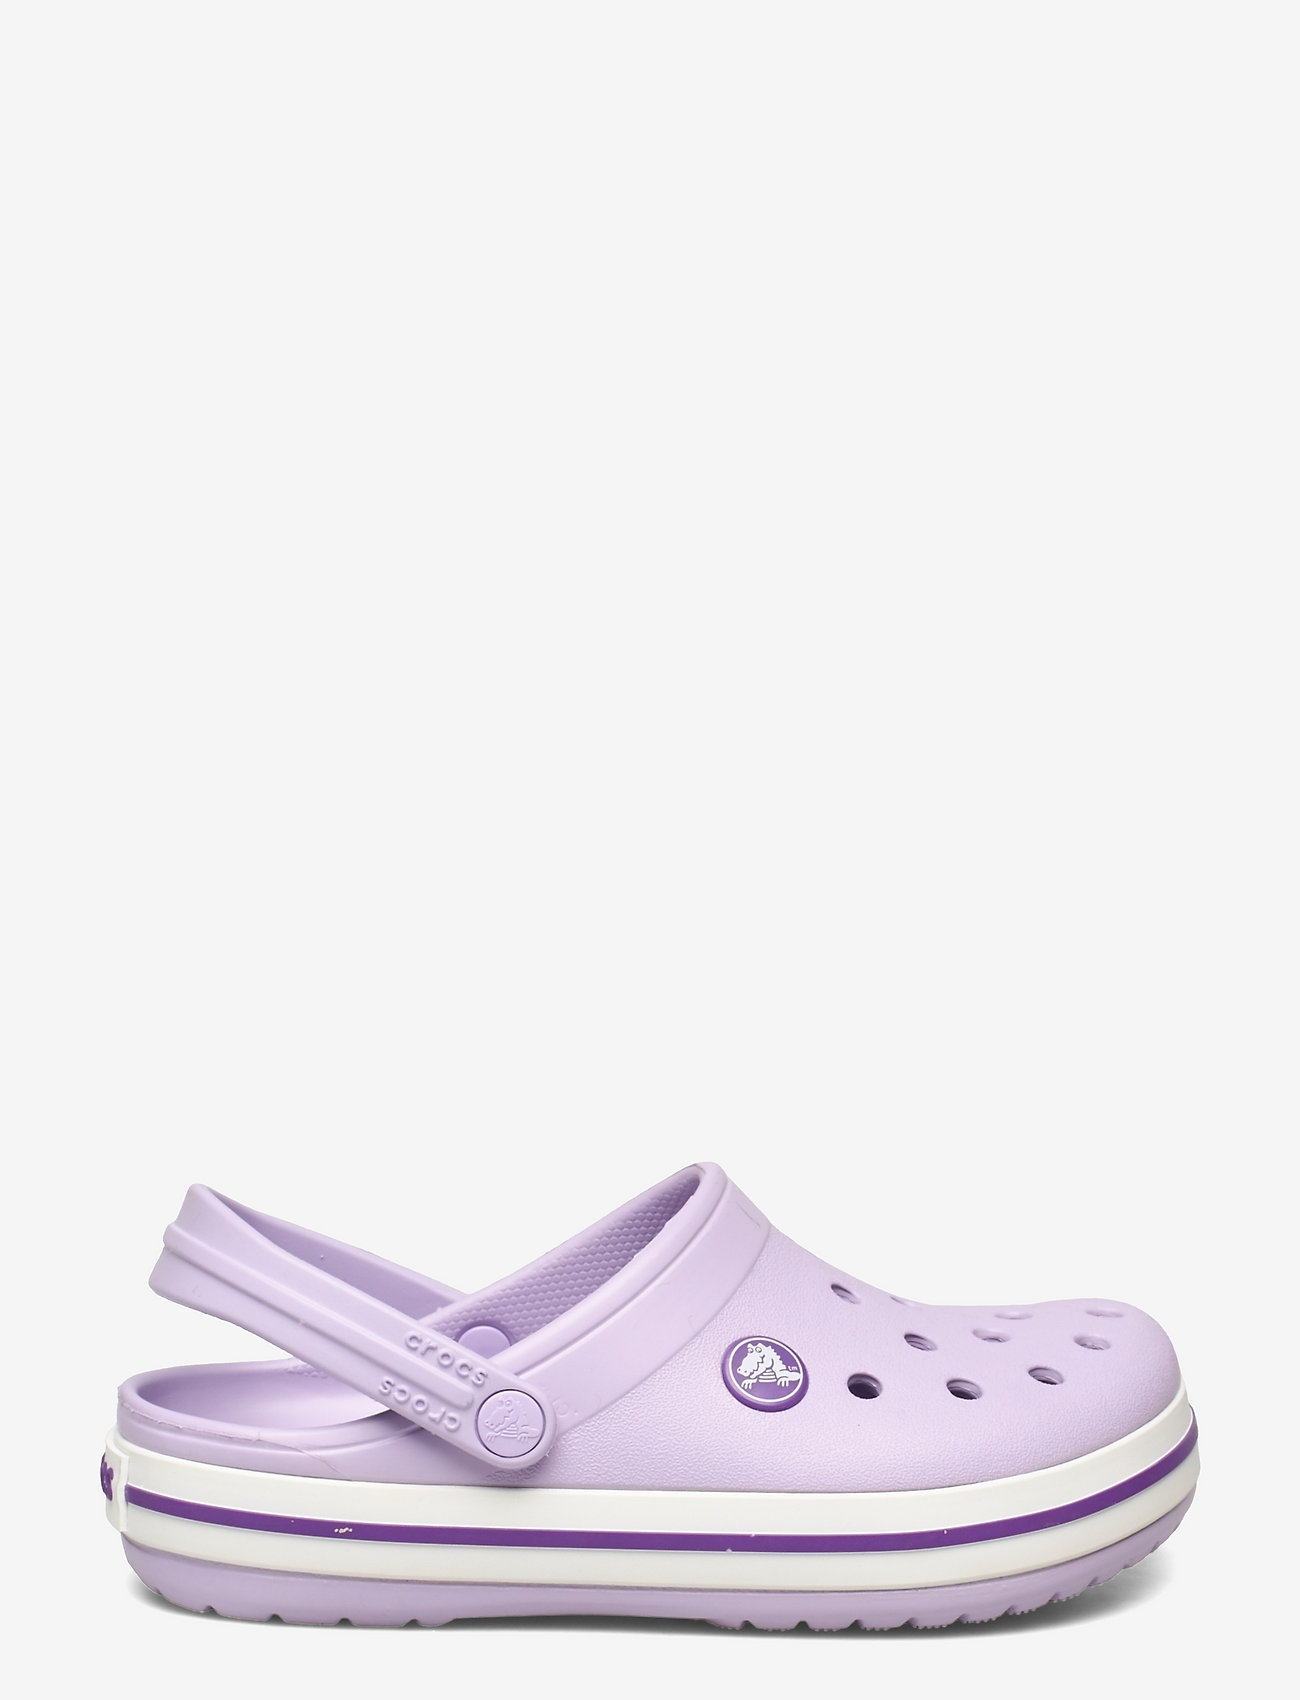 Crocs - Crocband Clog K - vasaras piedāvājumi - lavender/neon purple - 1